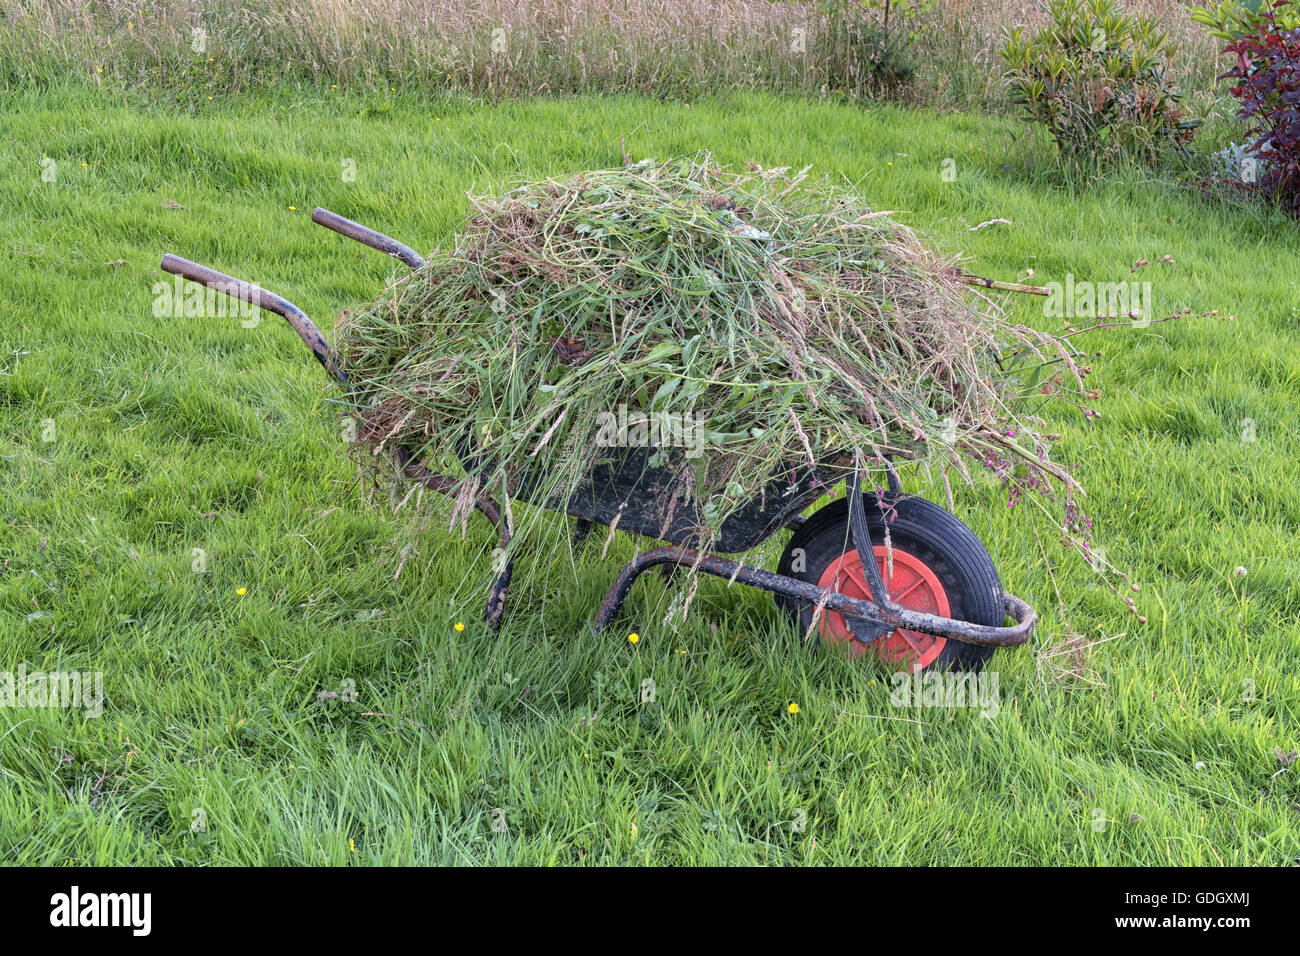 Jardin brouette sur la longue herbe entassé plein de mauvaises herbes.  Jardinage entretien désherbage Photo Stock - Alamy